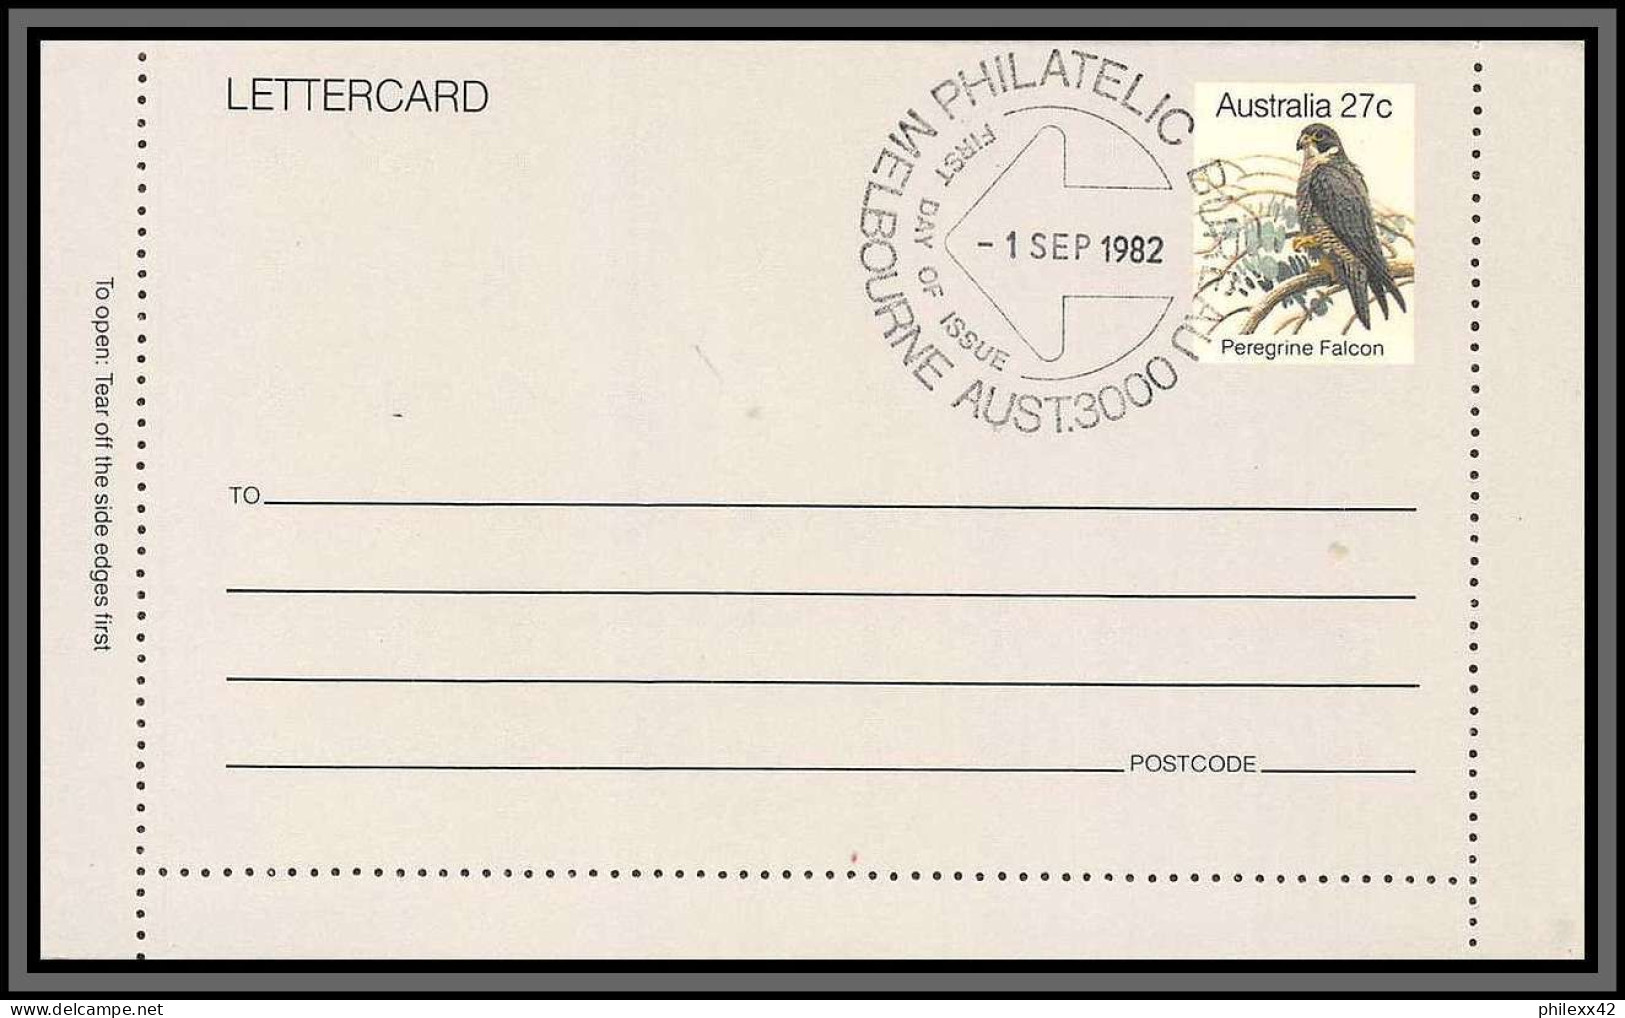 11253 PEREGRINE FALCON Faucon Pèlerin 1982 Entier Stationery Letter Card Australie Australia  - Ganzsachen